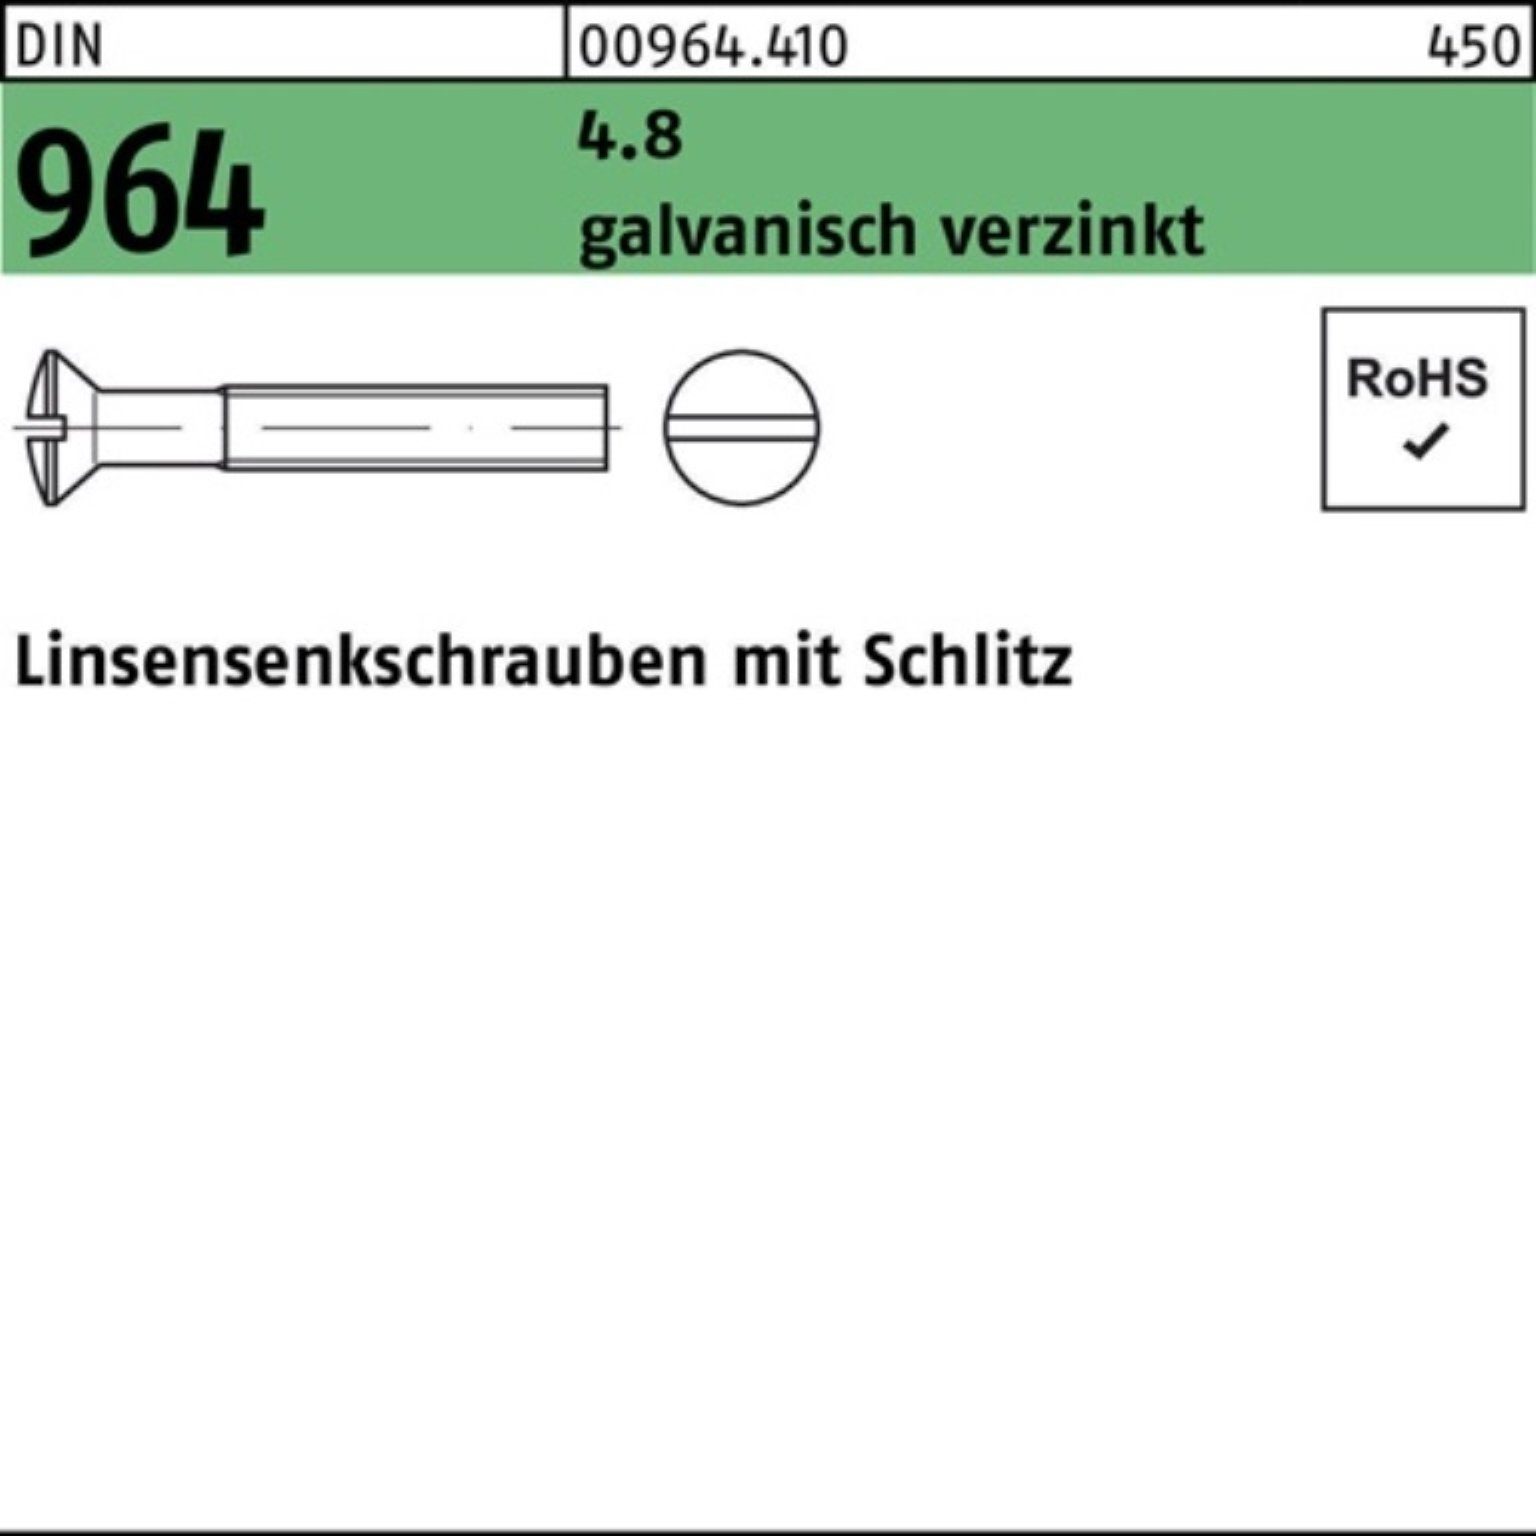 Reyher Linsenschraube 200er M6x Schlitz DIN Pack 964 20 galv.verz. 4.8 Linsensenkschraube 55